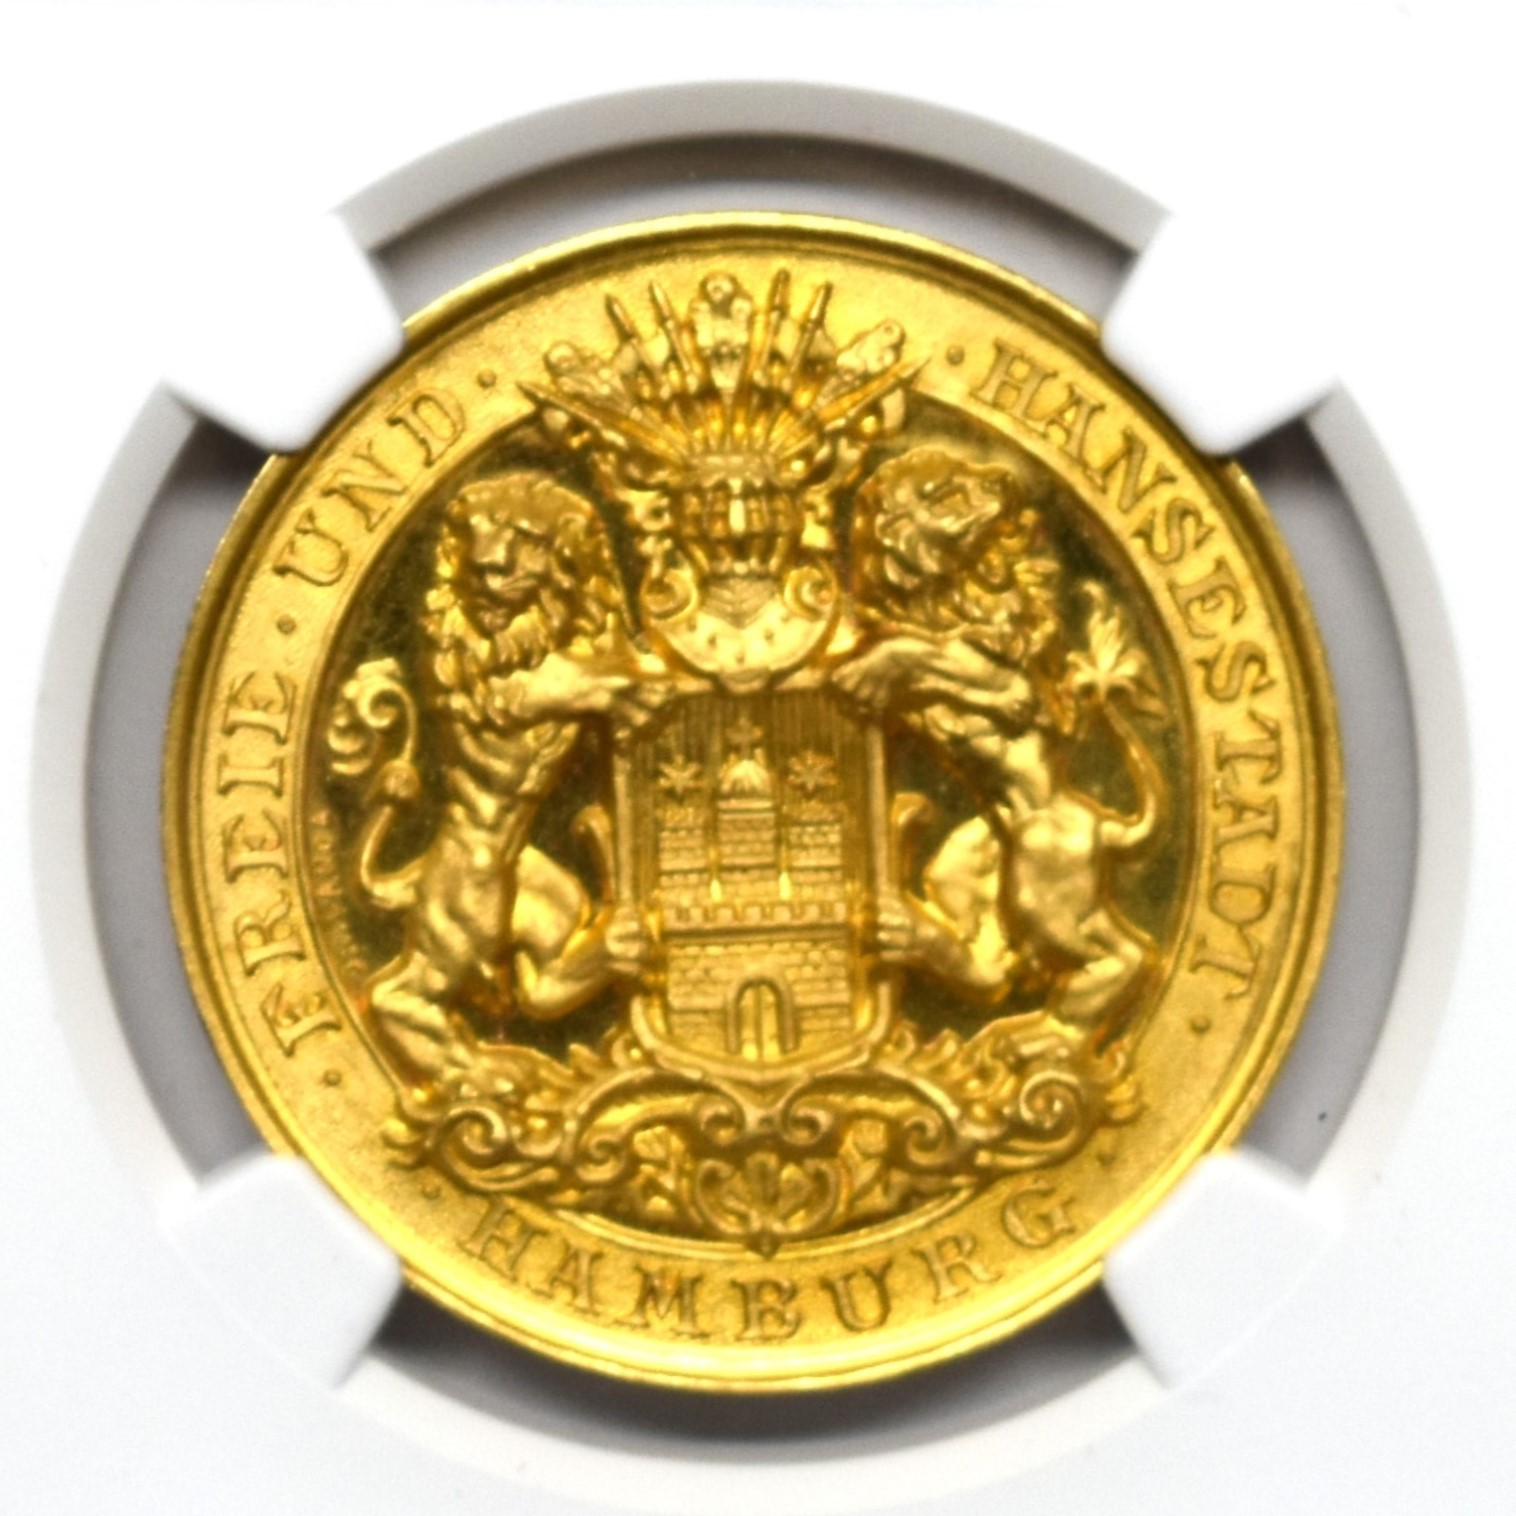 Sold】1888年 ハンブルク バンクポルトガレッサー 5ダカット金メダル 